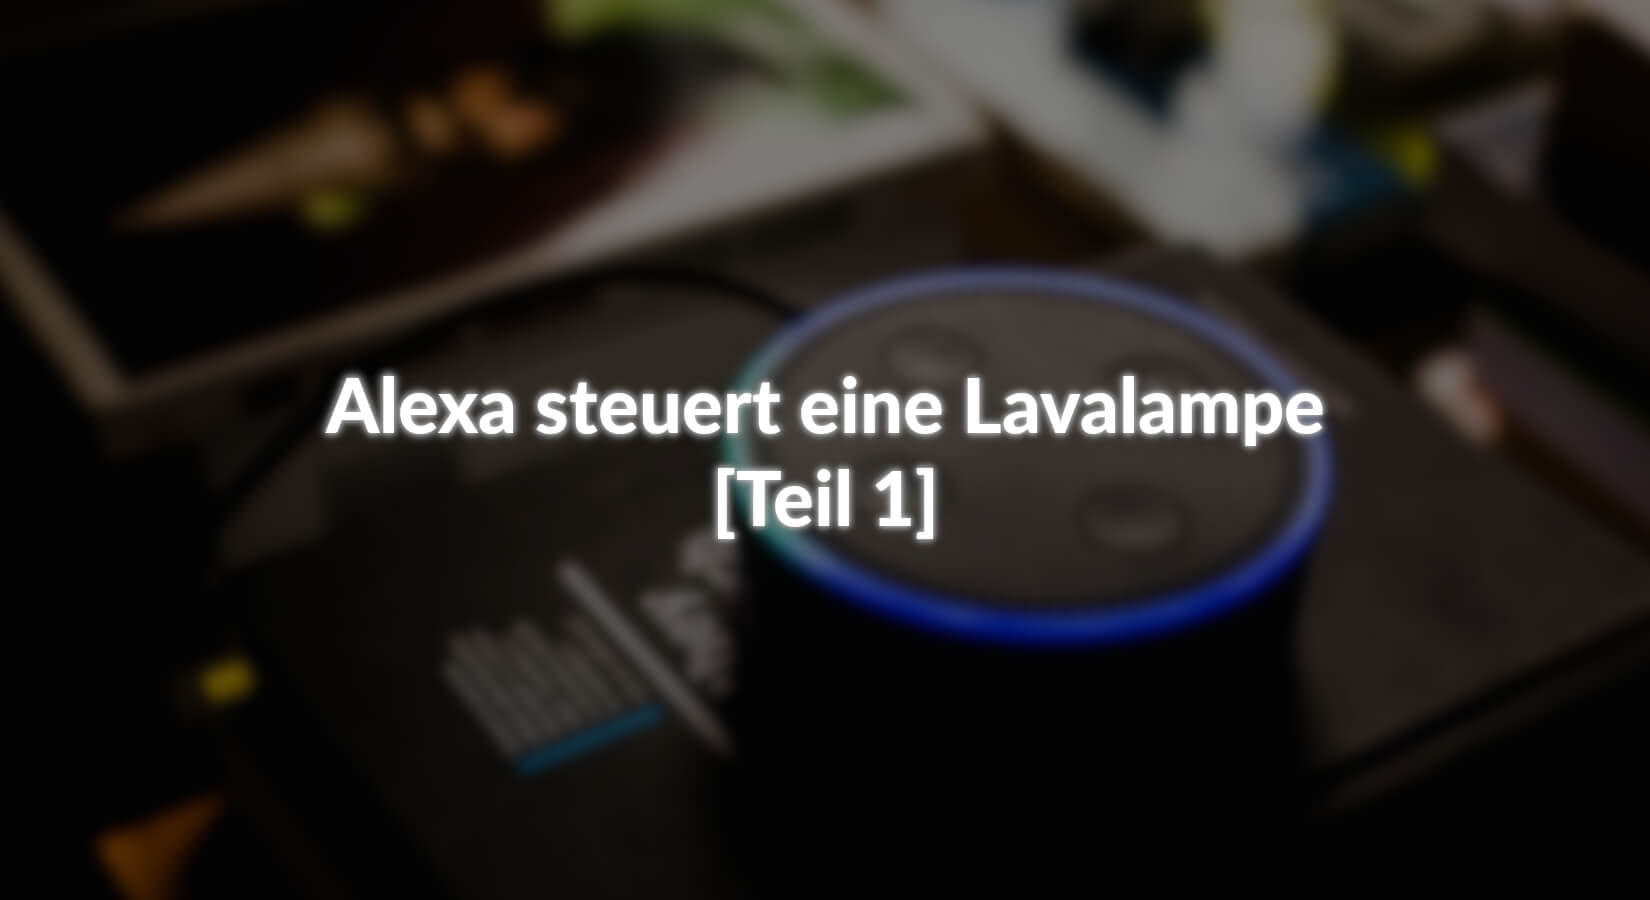 Alexa steuert eine Lavalampe - [Teil 1] - AZ-Delivery